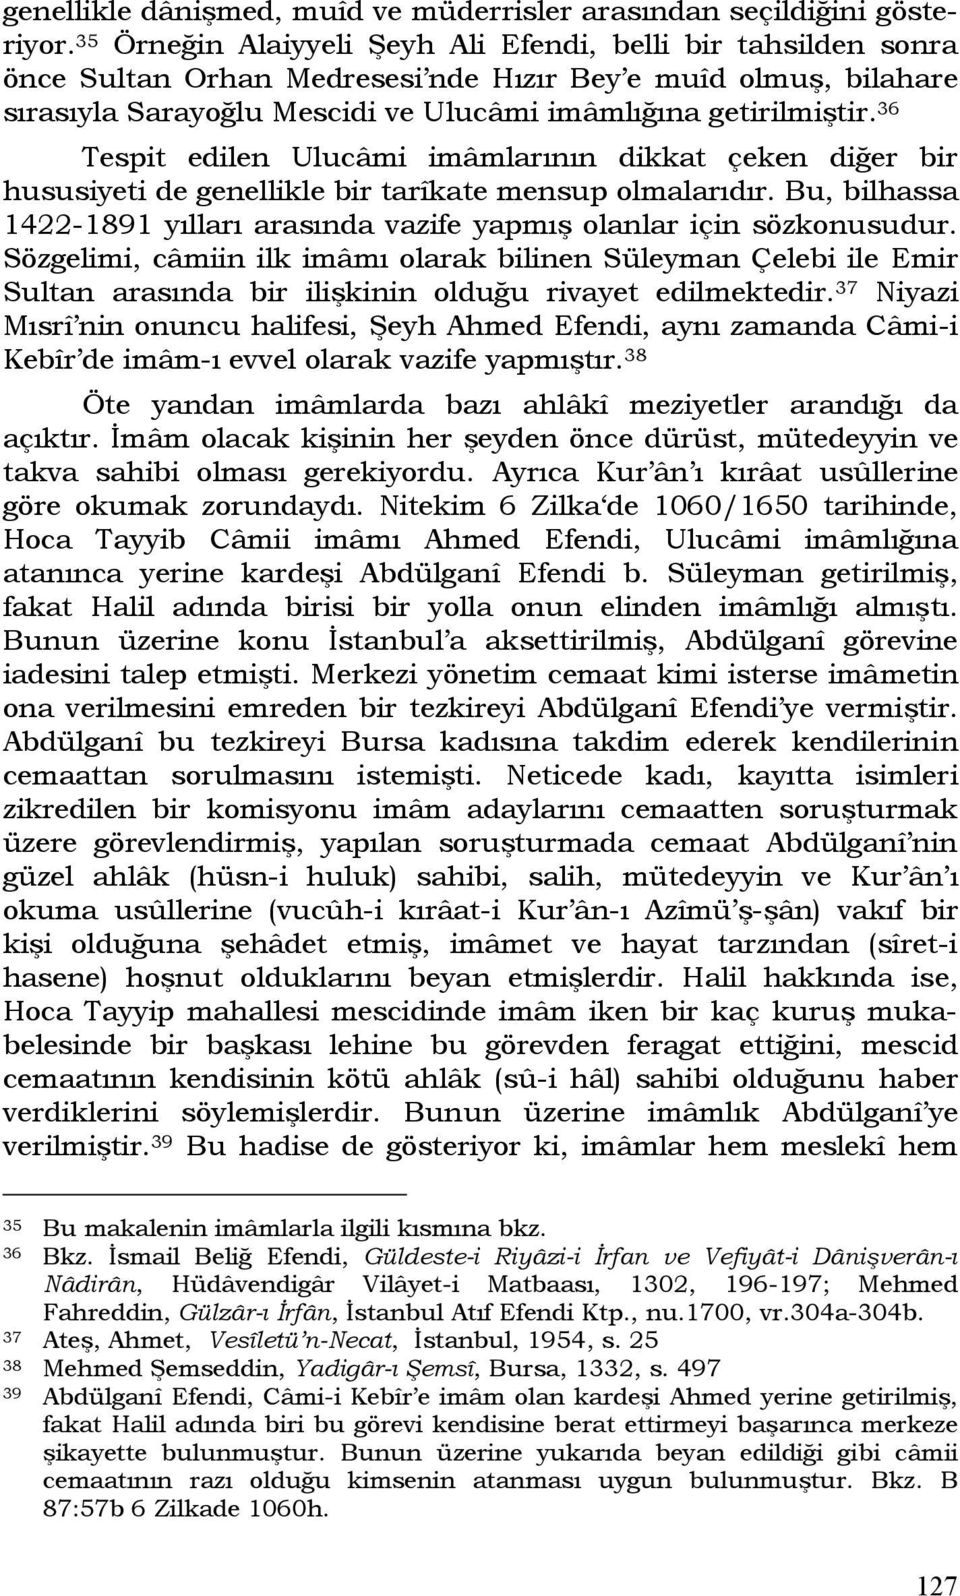 36 Tespit edilen Ulucâmi imâmlarının dikkat çeken diğer bir hususiyeti de genellikle bir tarîkate mensup olmalarıdır. Bu, bilhassa 1422-1891 yılları arasında vazife yapmış olanlar için sözkonusudur.